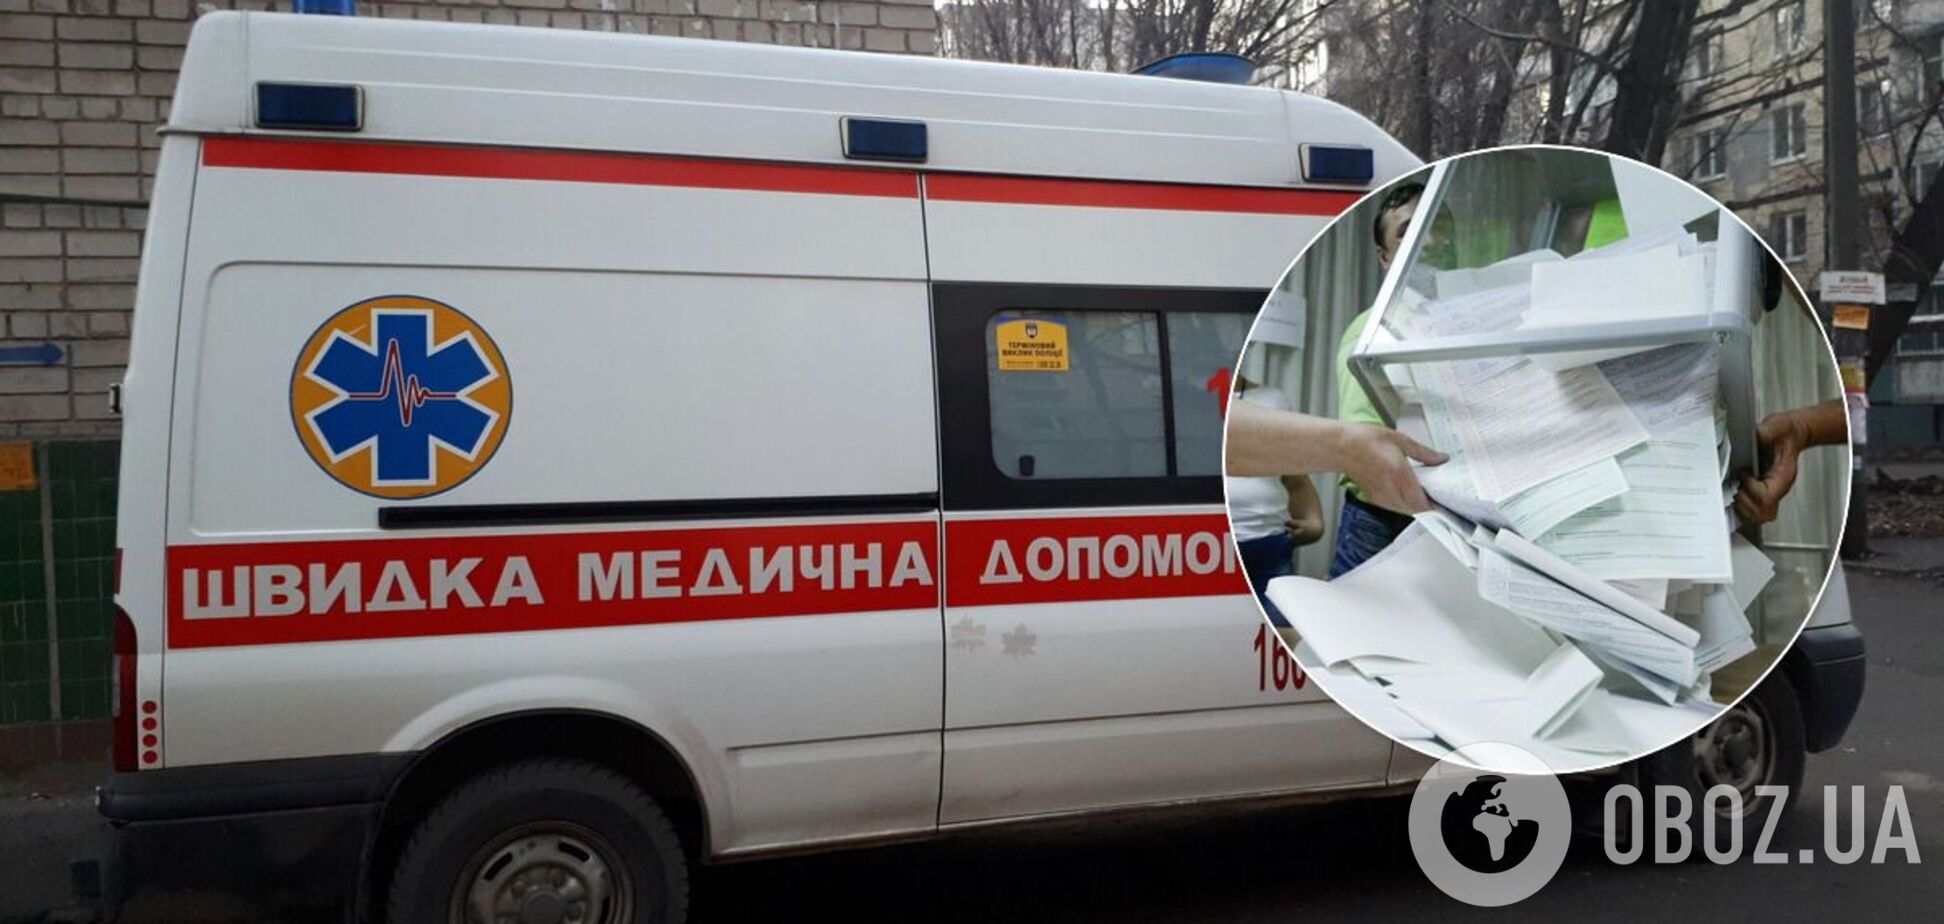 В Одессе член избирательной комиссии умер на 3-й день подсчета голосов